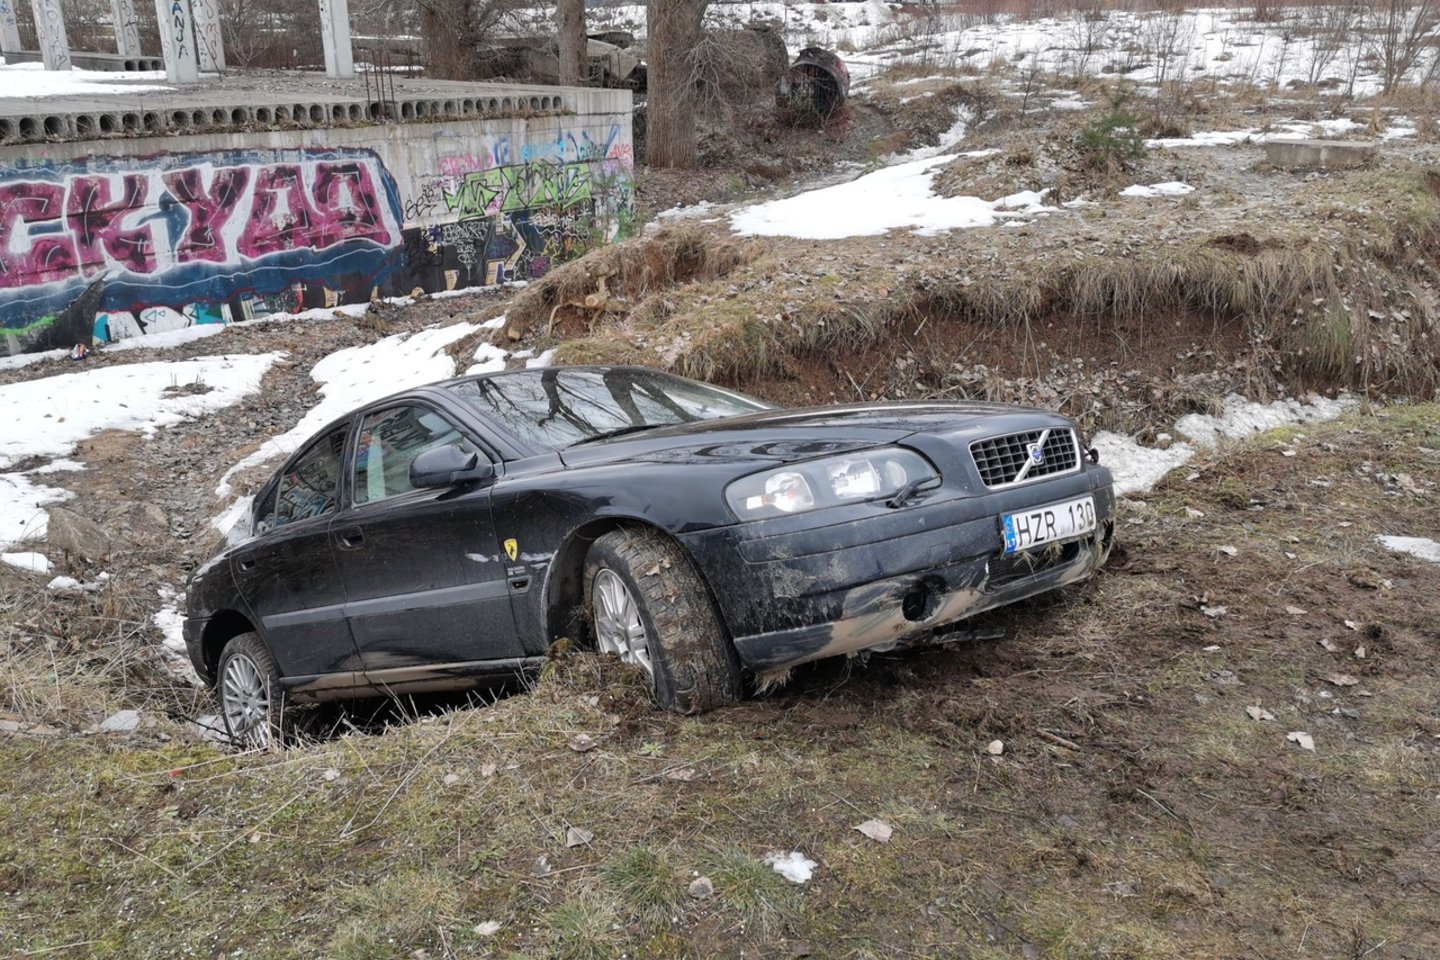  Girtos moters automobilis Vilniuje nuskriejo nuo kelio.<br> R.Danisevičiaus nuotr.